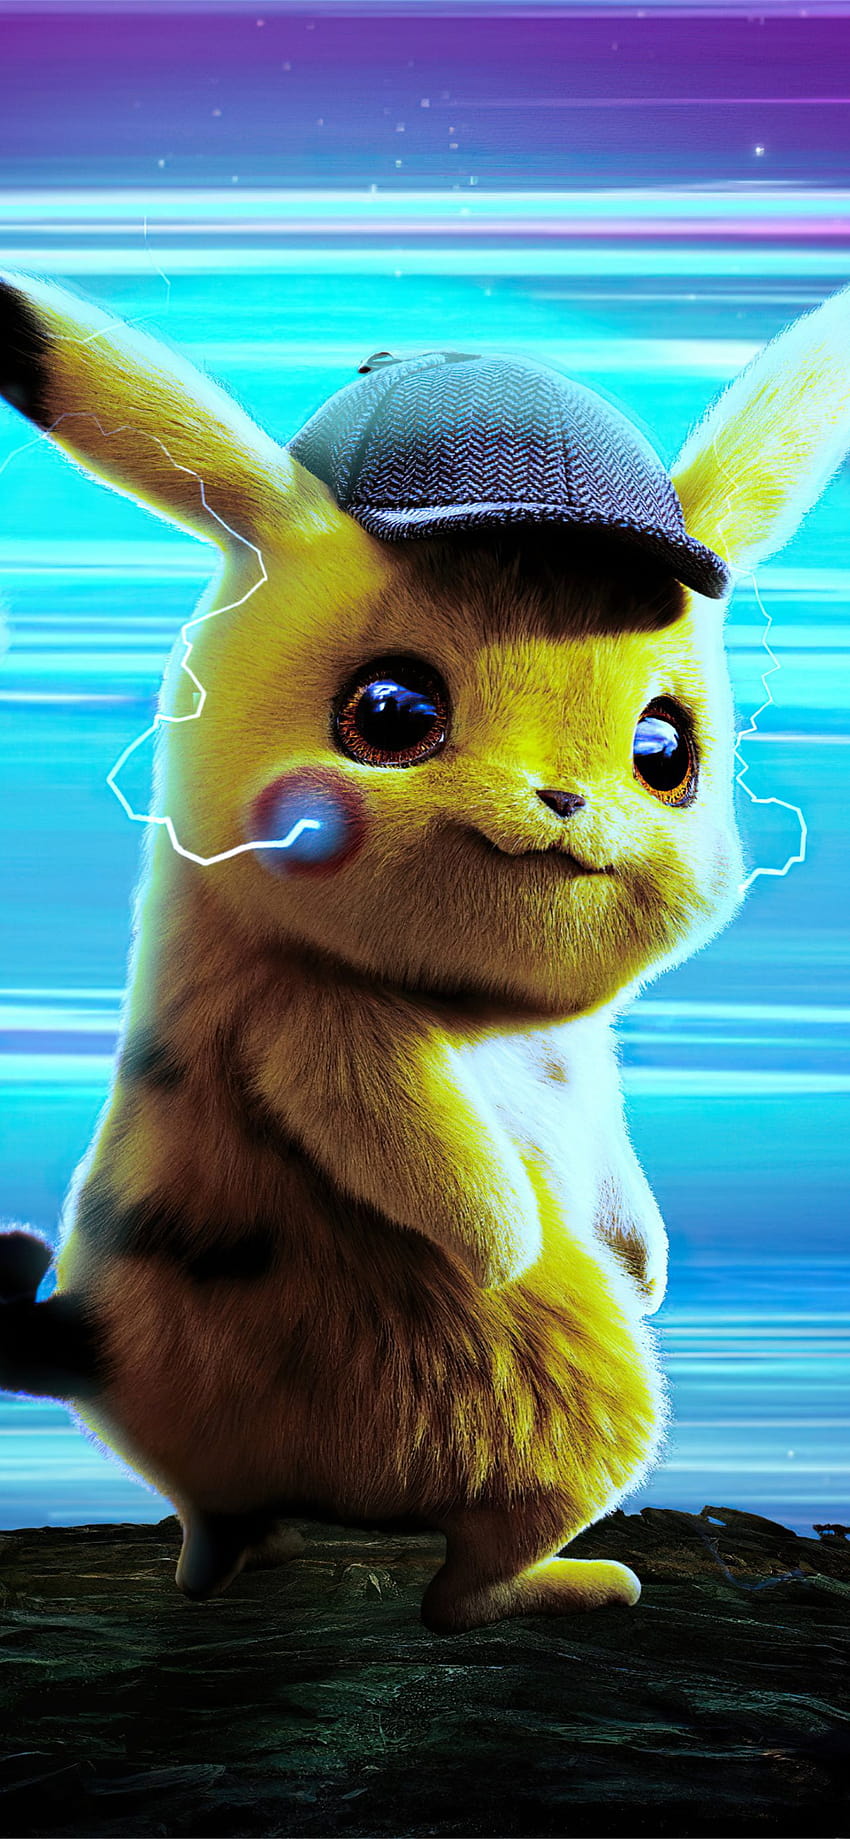 100 Pikachu Iphone Wallpapers  Wallpaperscom